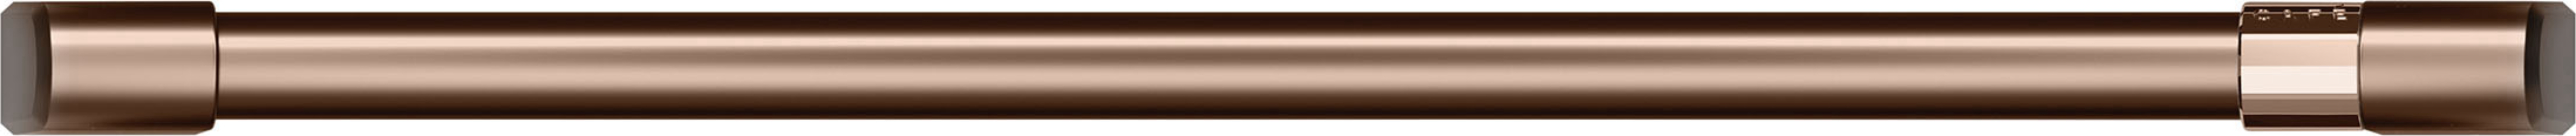 Cafe30" Brushed Copper handle/knob